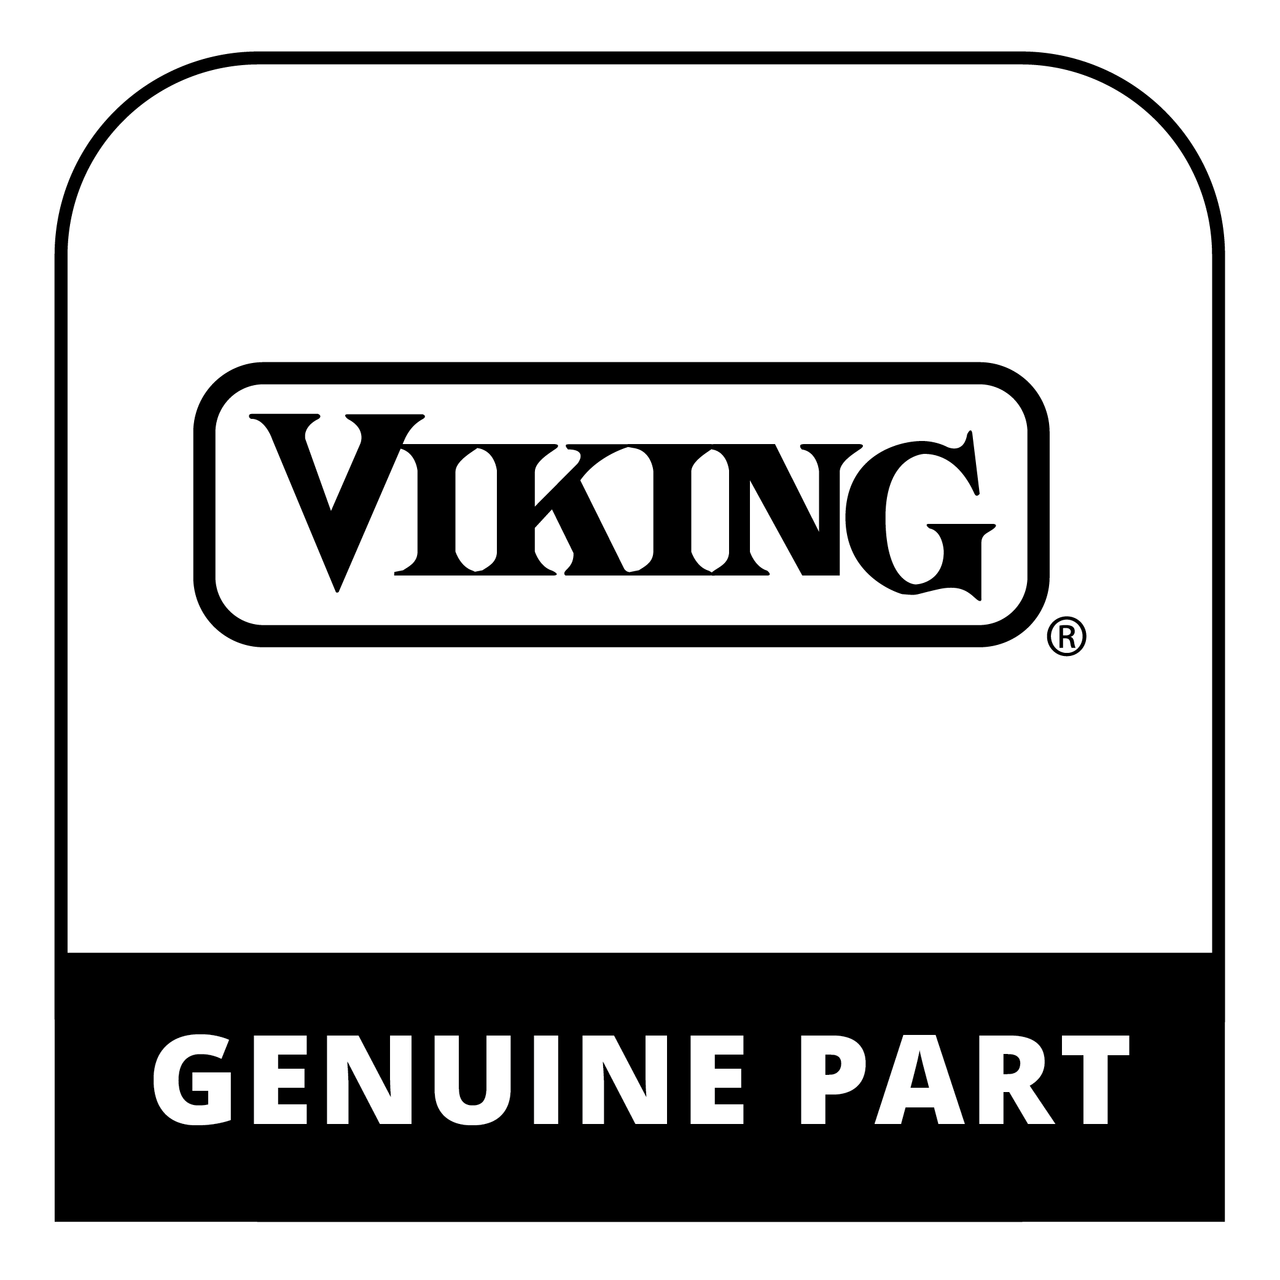 Viking 025512-006 - 30" DOOR PANEL W/O LOGO, WH - Genuine Viking Part